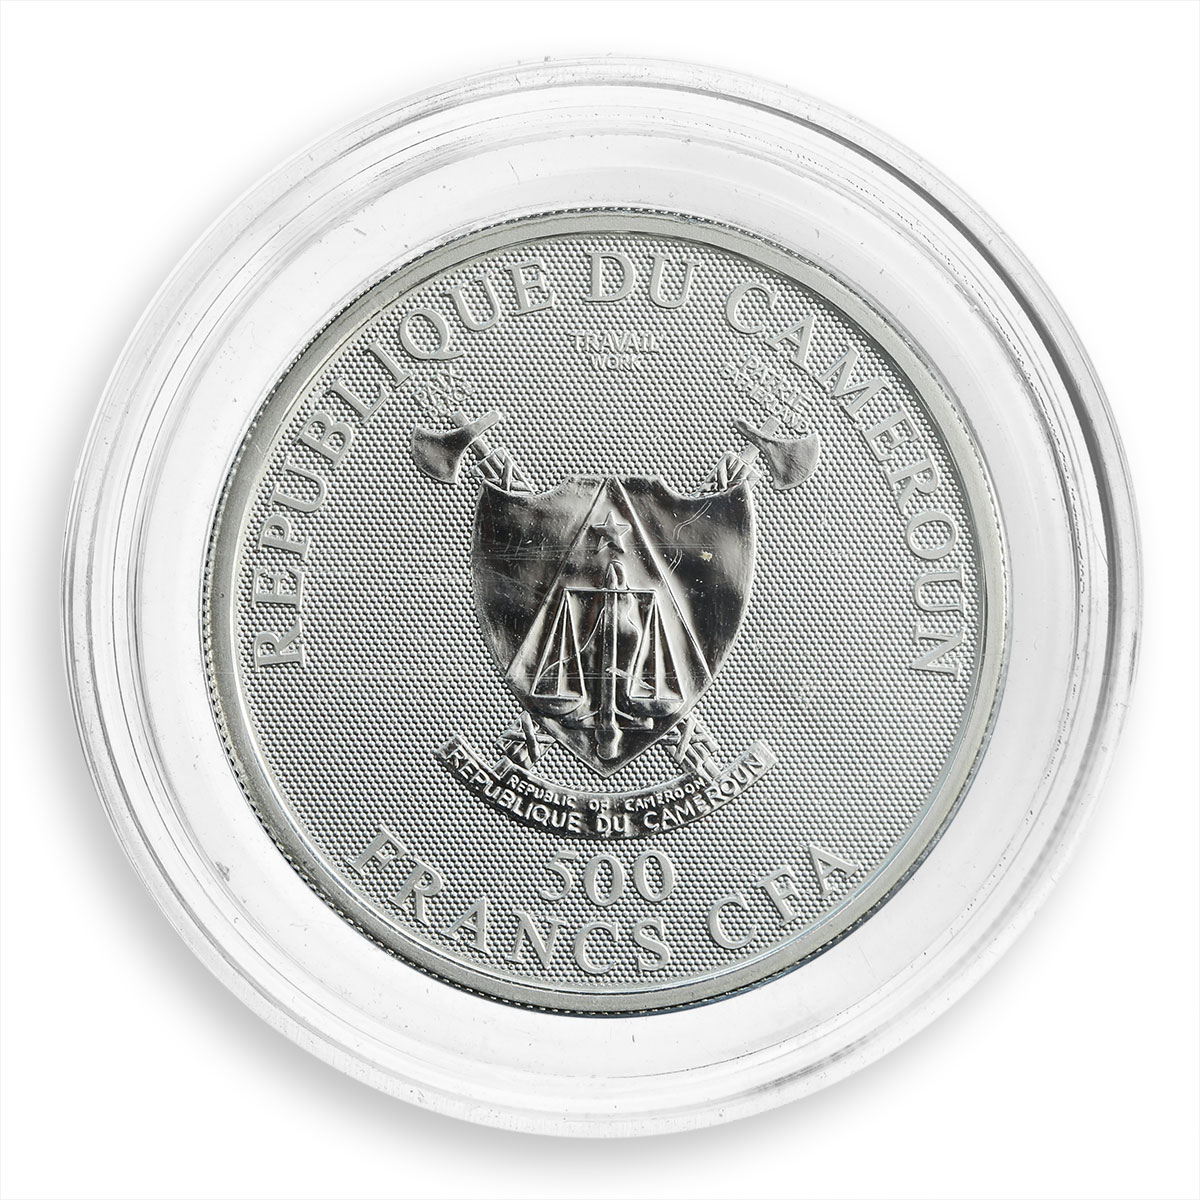 Cameroun 500 francs zodiac Geminis hologram silver coin 2010